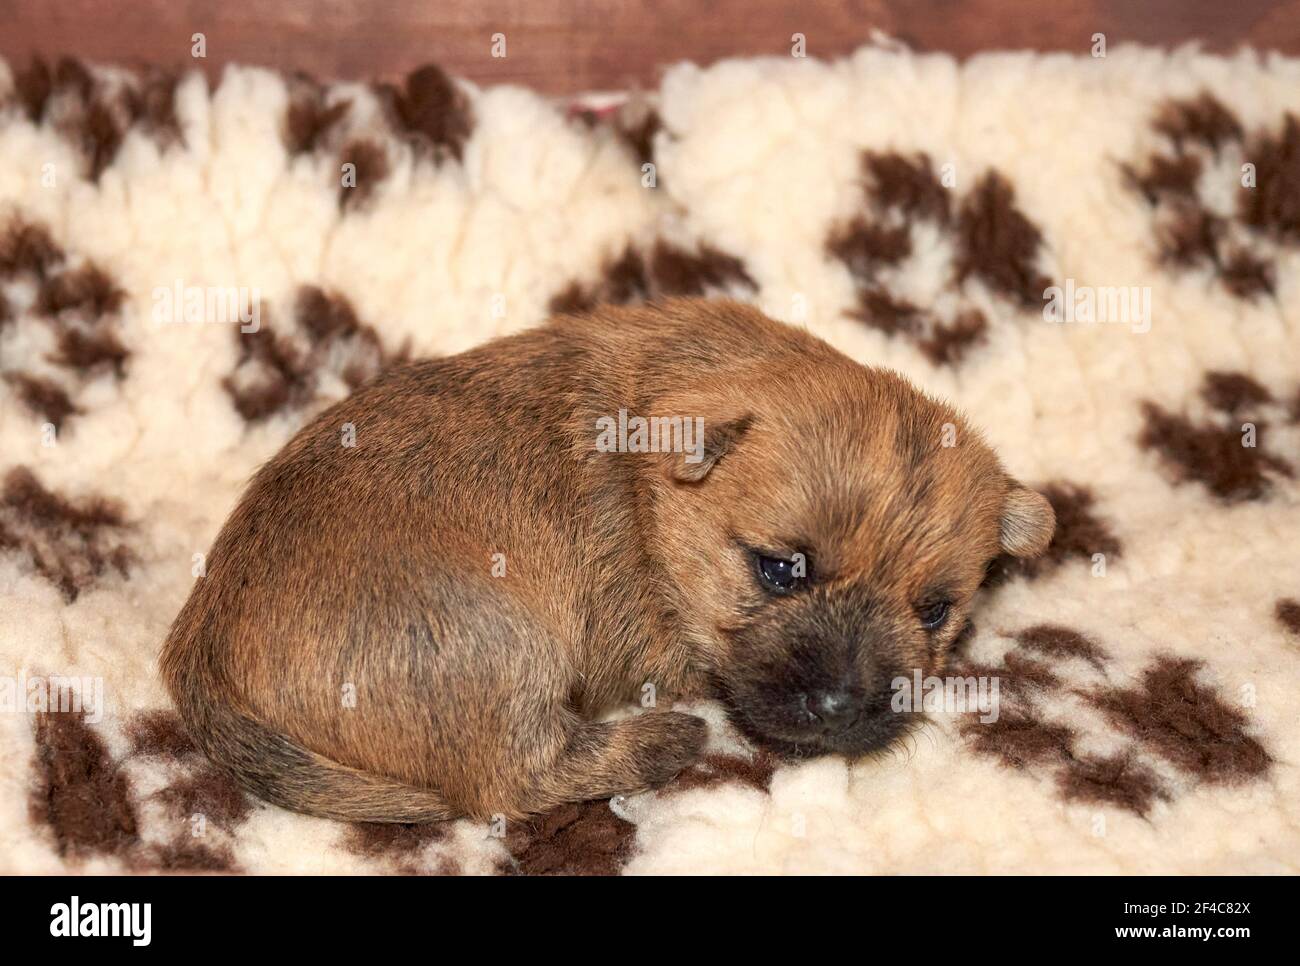 Mignon Cairn Terrier chiot (14 jours) emmêlé dans sa boîte de mise. Banque D'Images